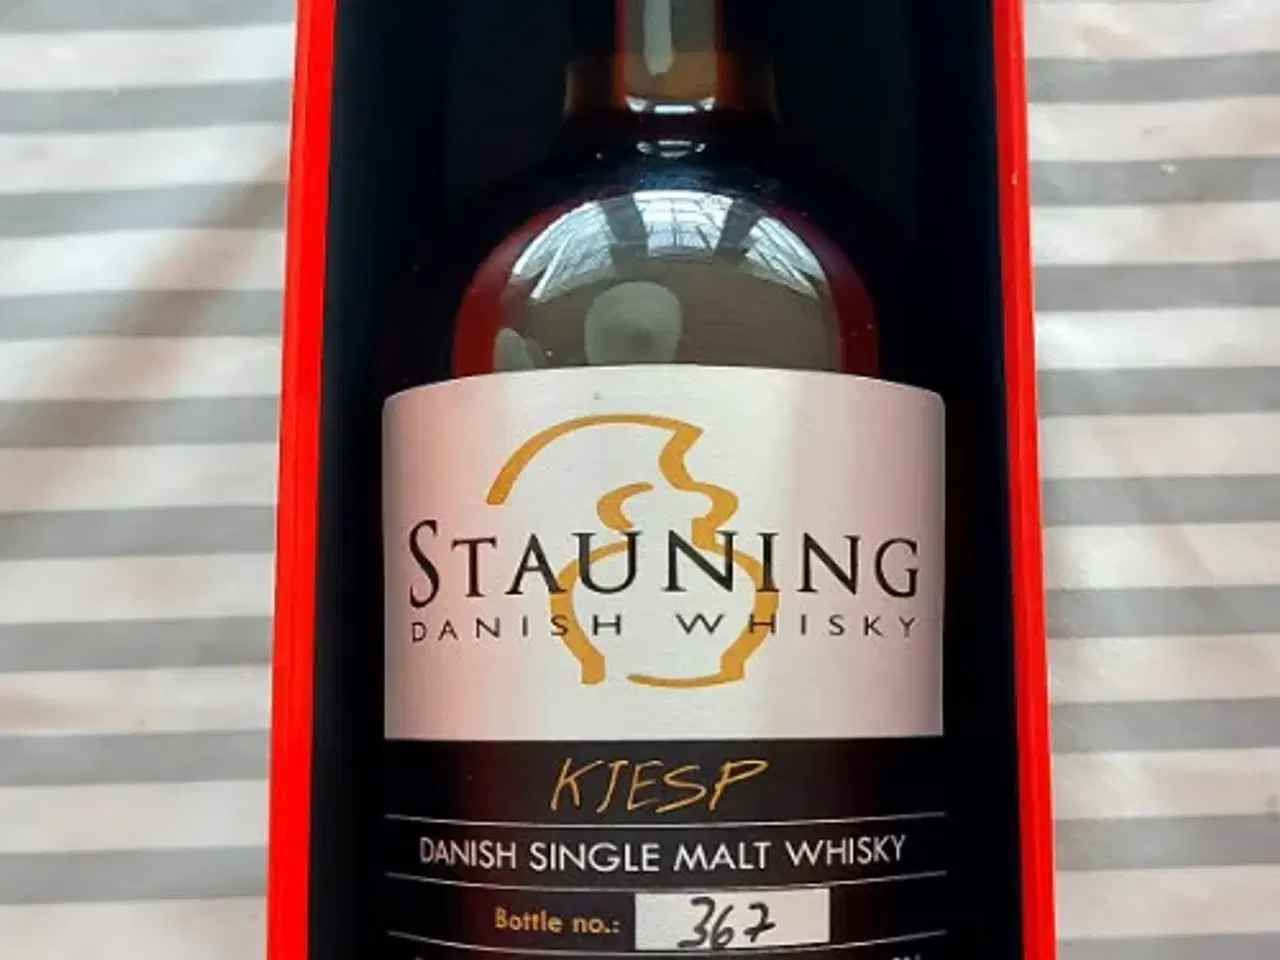 Billede 2 - Spiritus - Stauning Whisky - Kjesp.